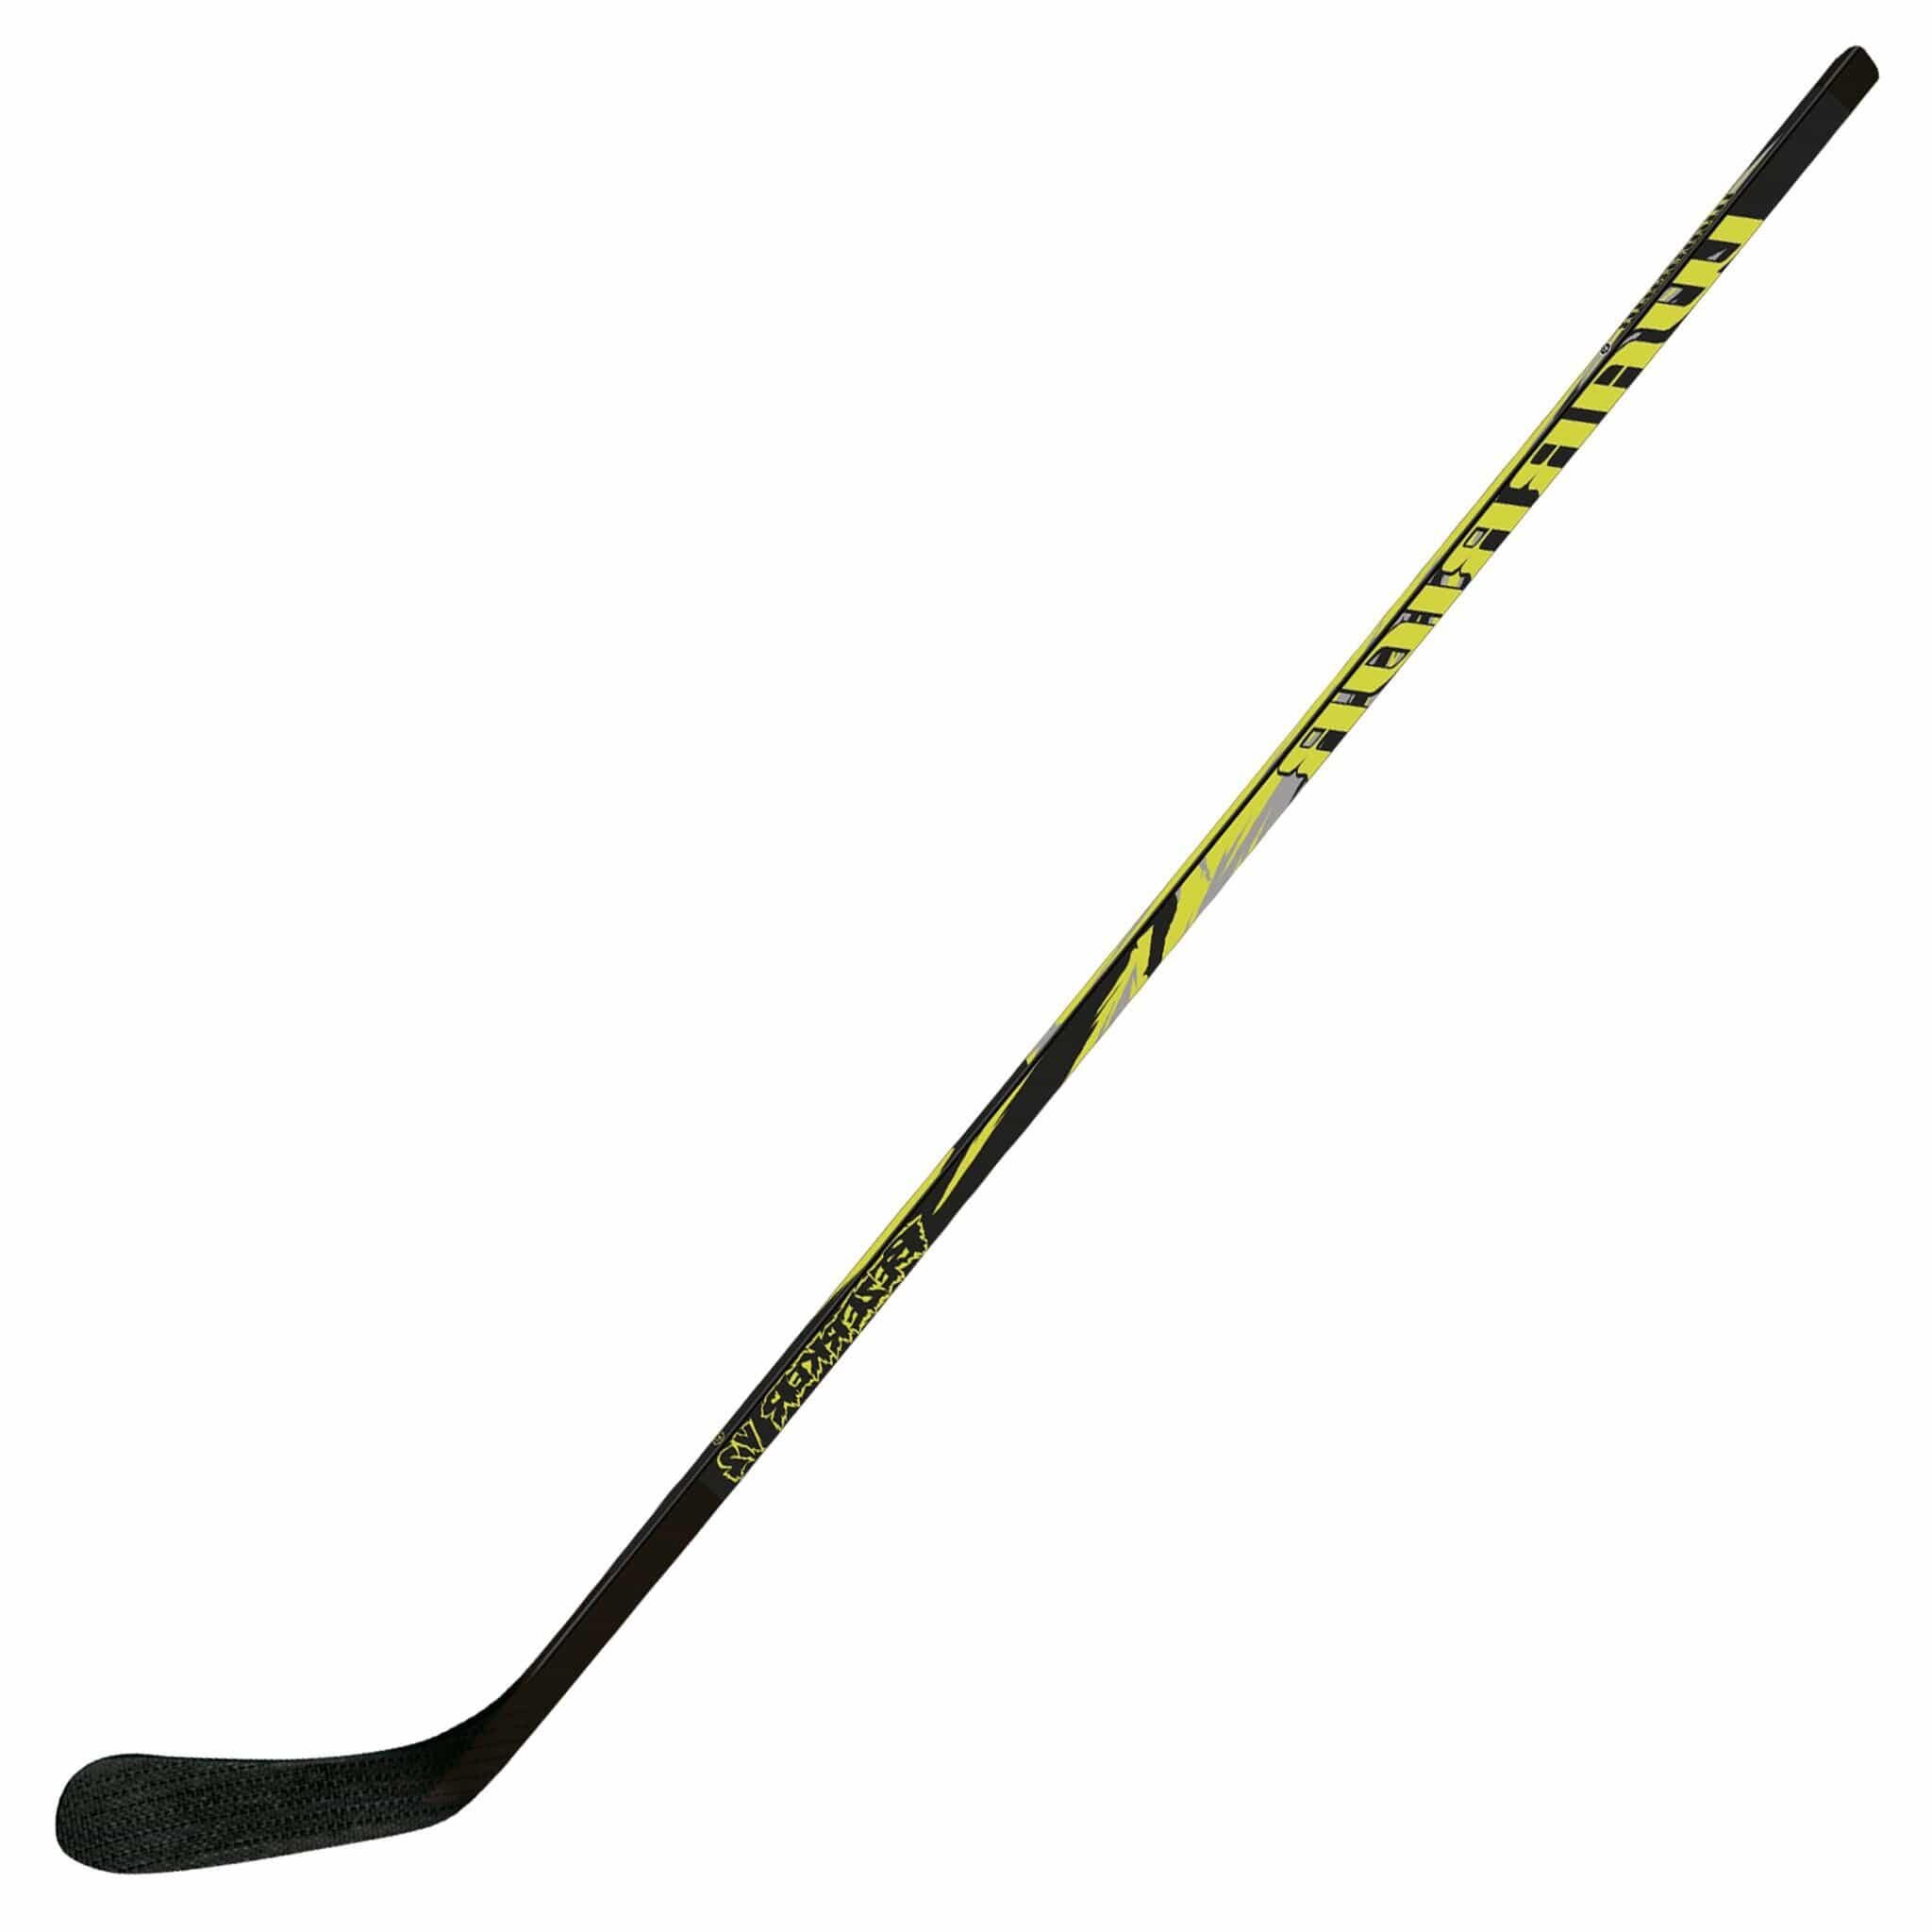 WARRIOR Warrior Bezerker V2 Wooden Hockey Stick - Senior Right Hand